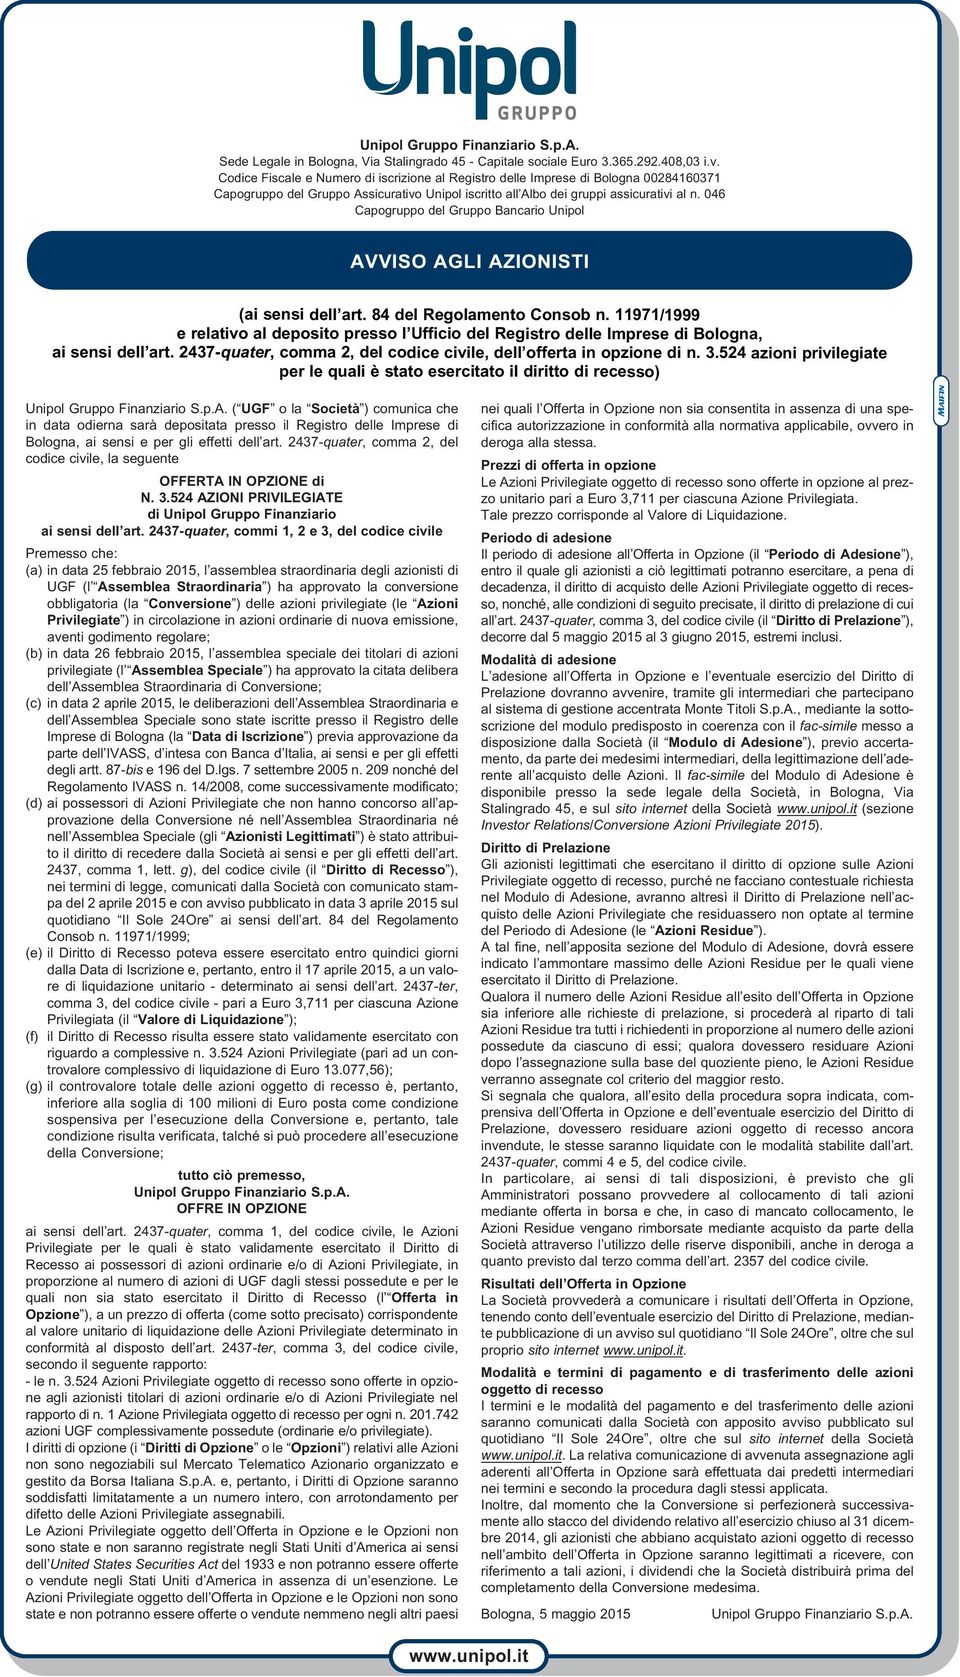 046 Capogruppo del Gruppo Bancario Unipol AVVISO AGLI AZIONISTI (ai sensi dell art. 84 del Regolamento Consob n.